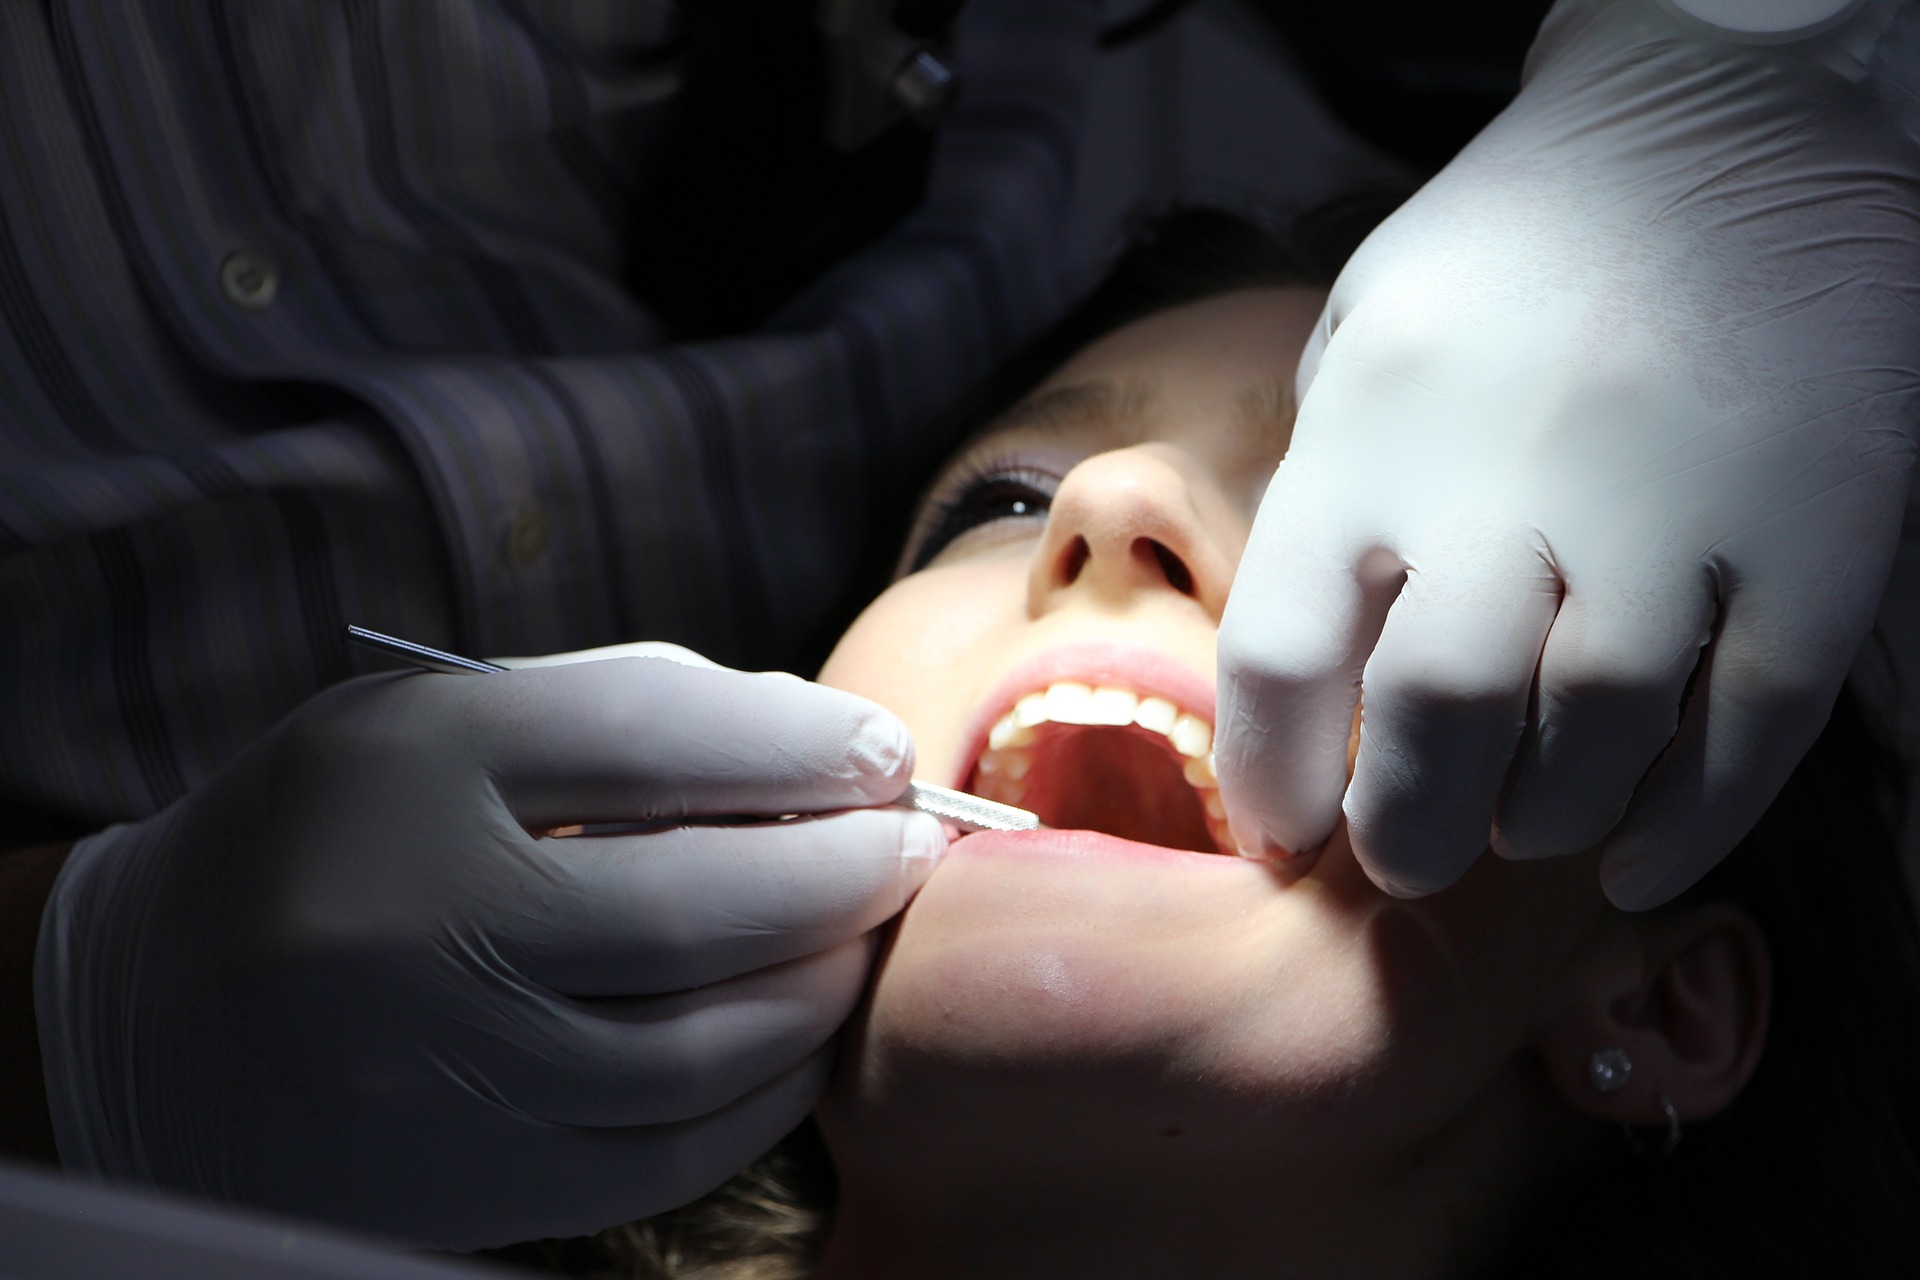 Jak dbać o zęby?